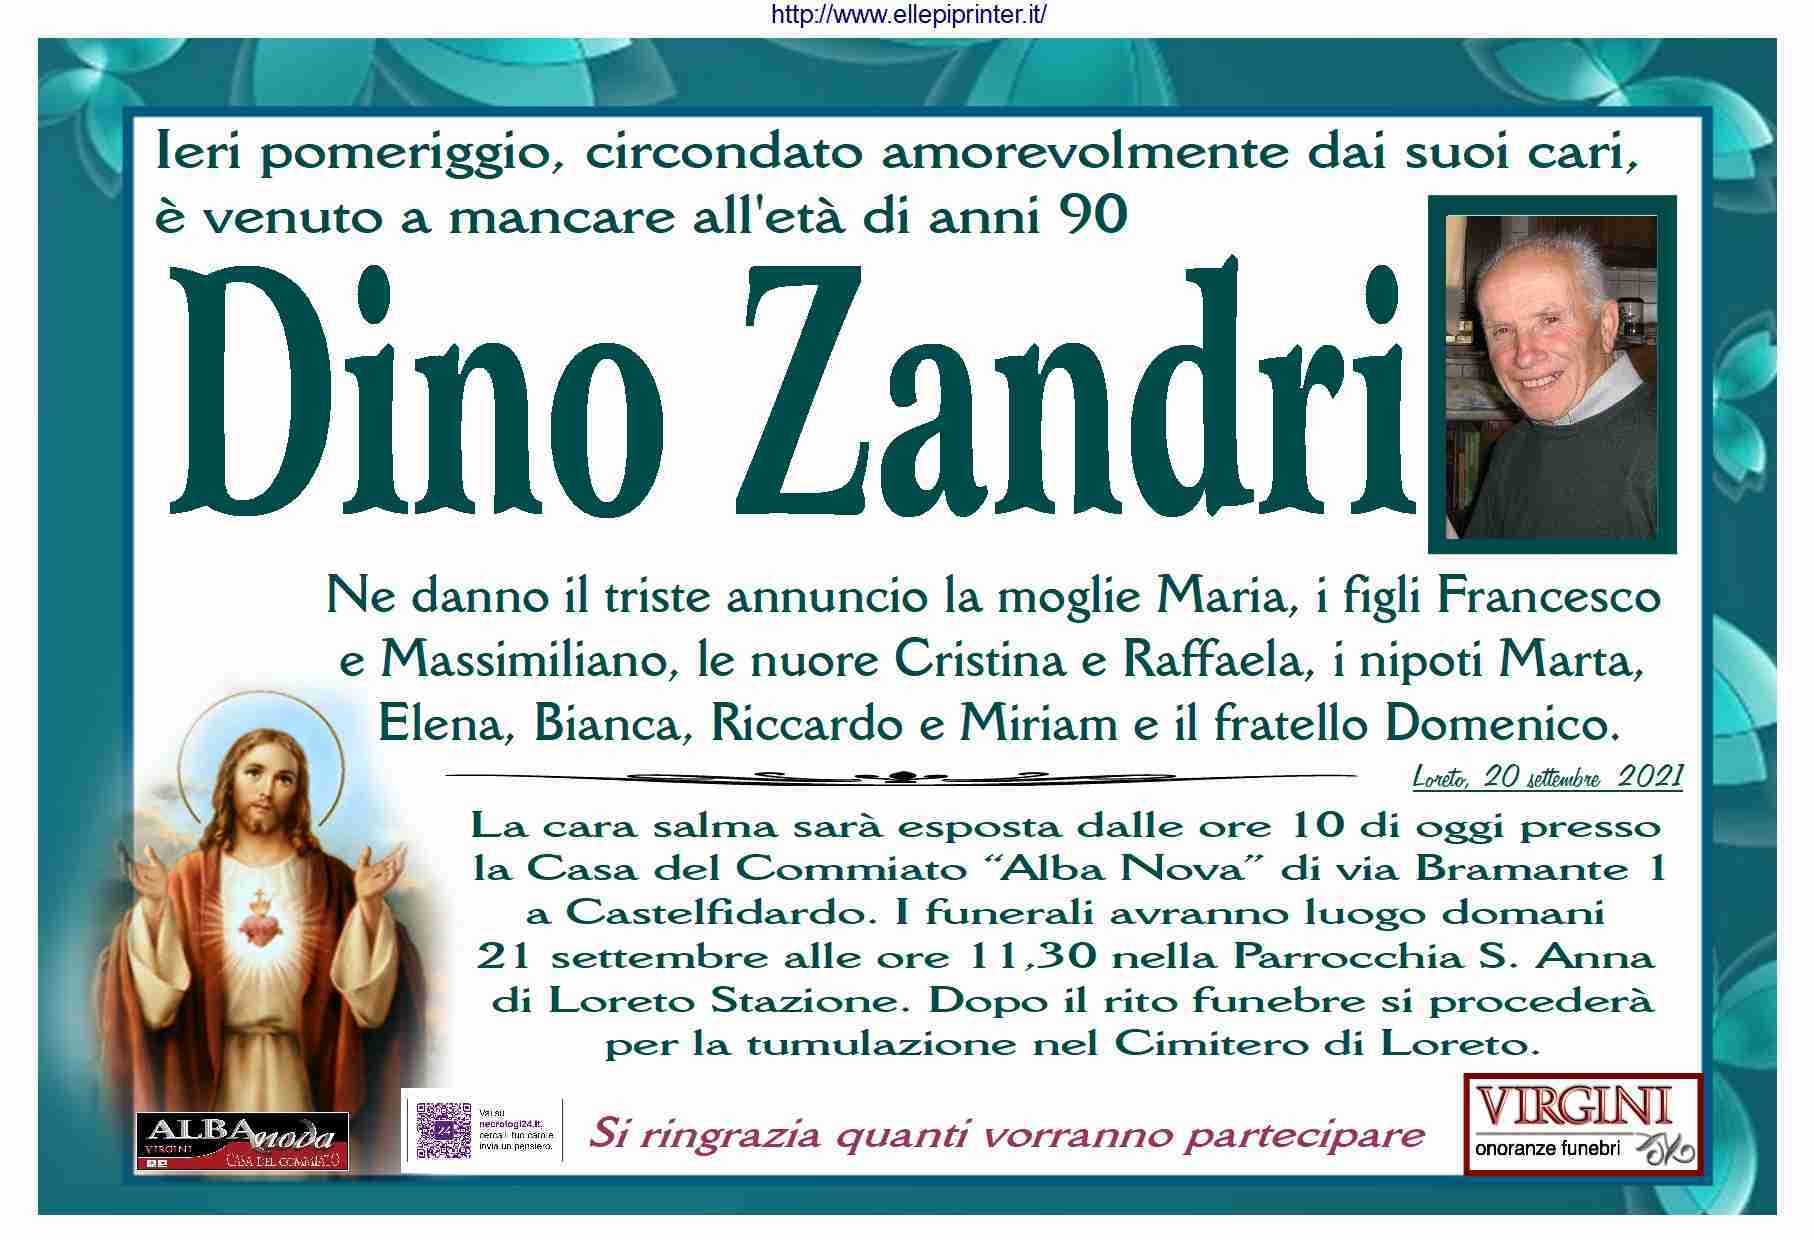 Dino Zandri